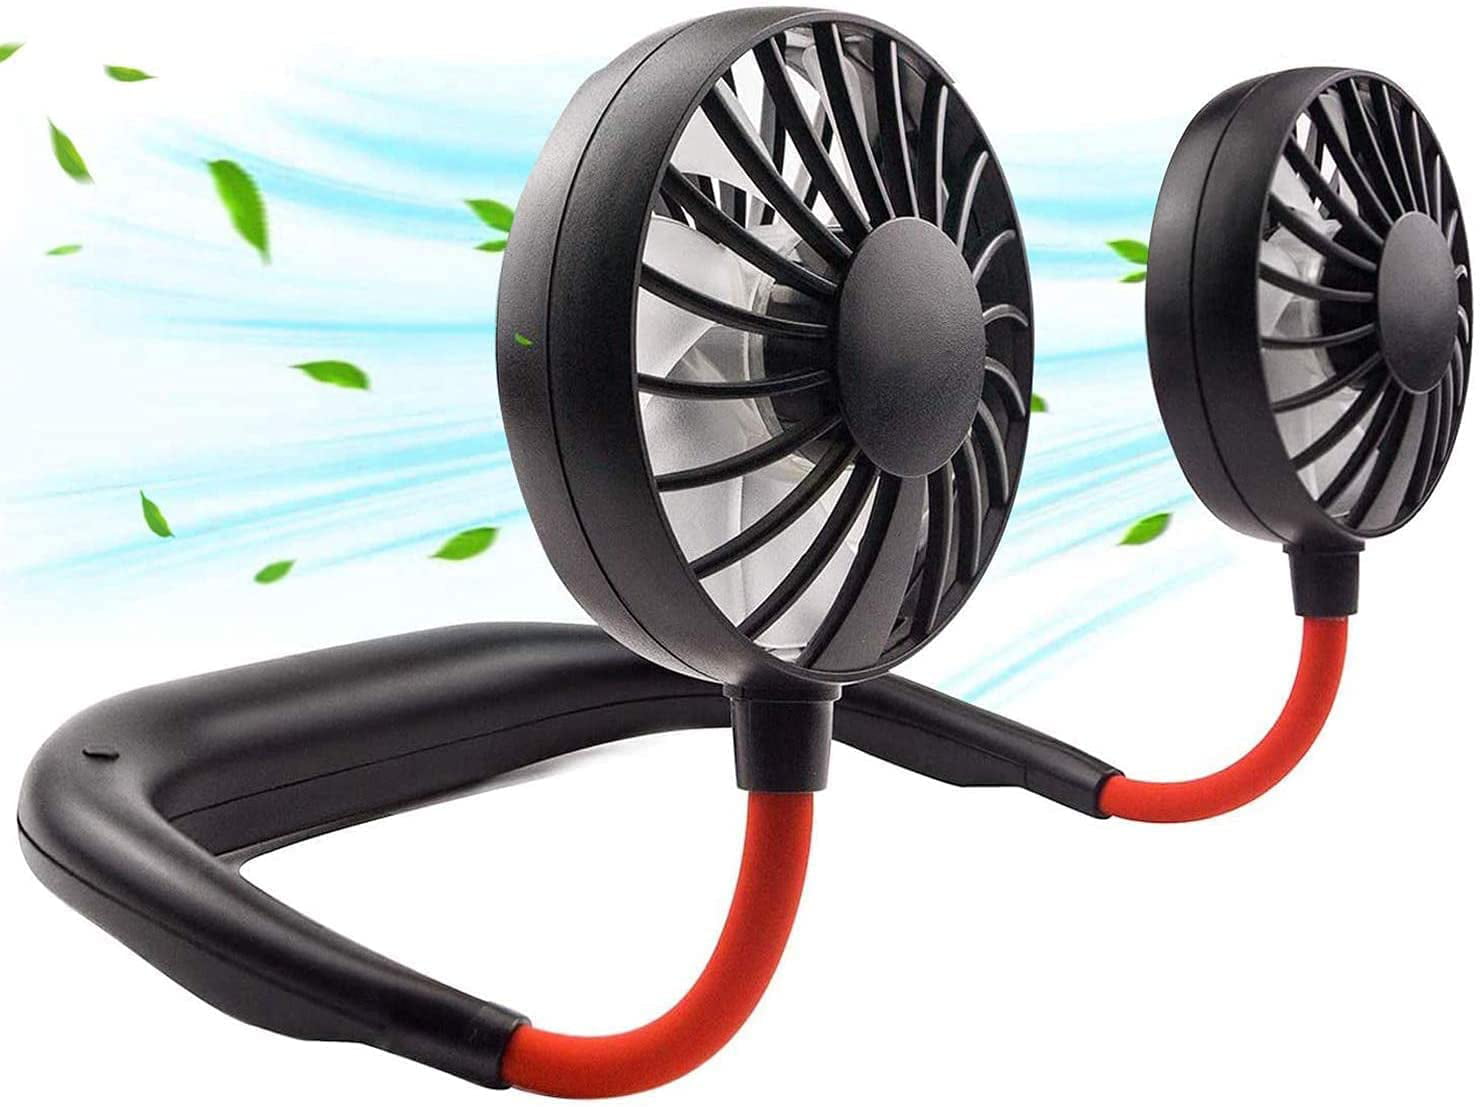 Mini Cooling Lazy Fan for Sports Rest Portable Rechargeable Fan Hanging Neck Fan 